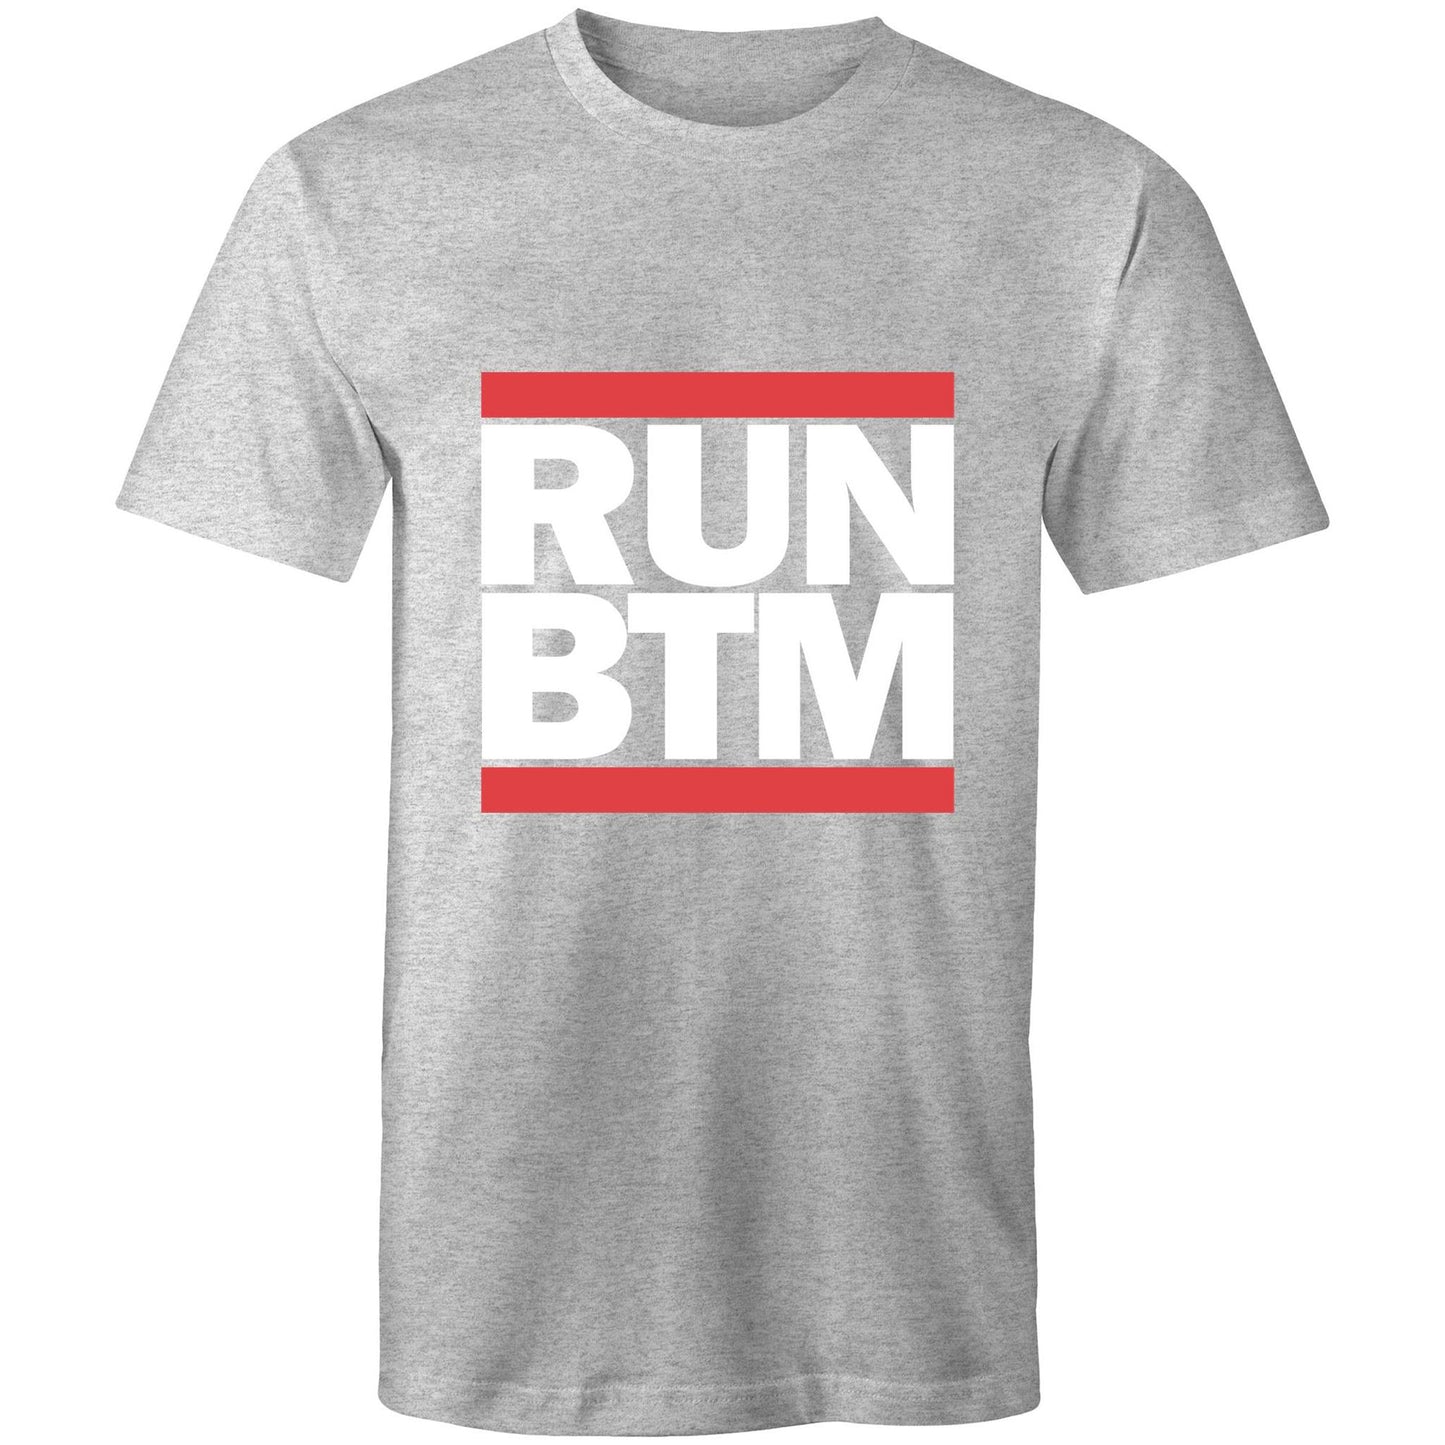 RUN BTM (White Font) - AS Colour Staple - Mens T-Shirt